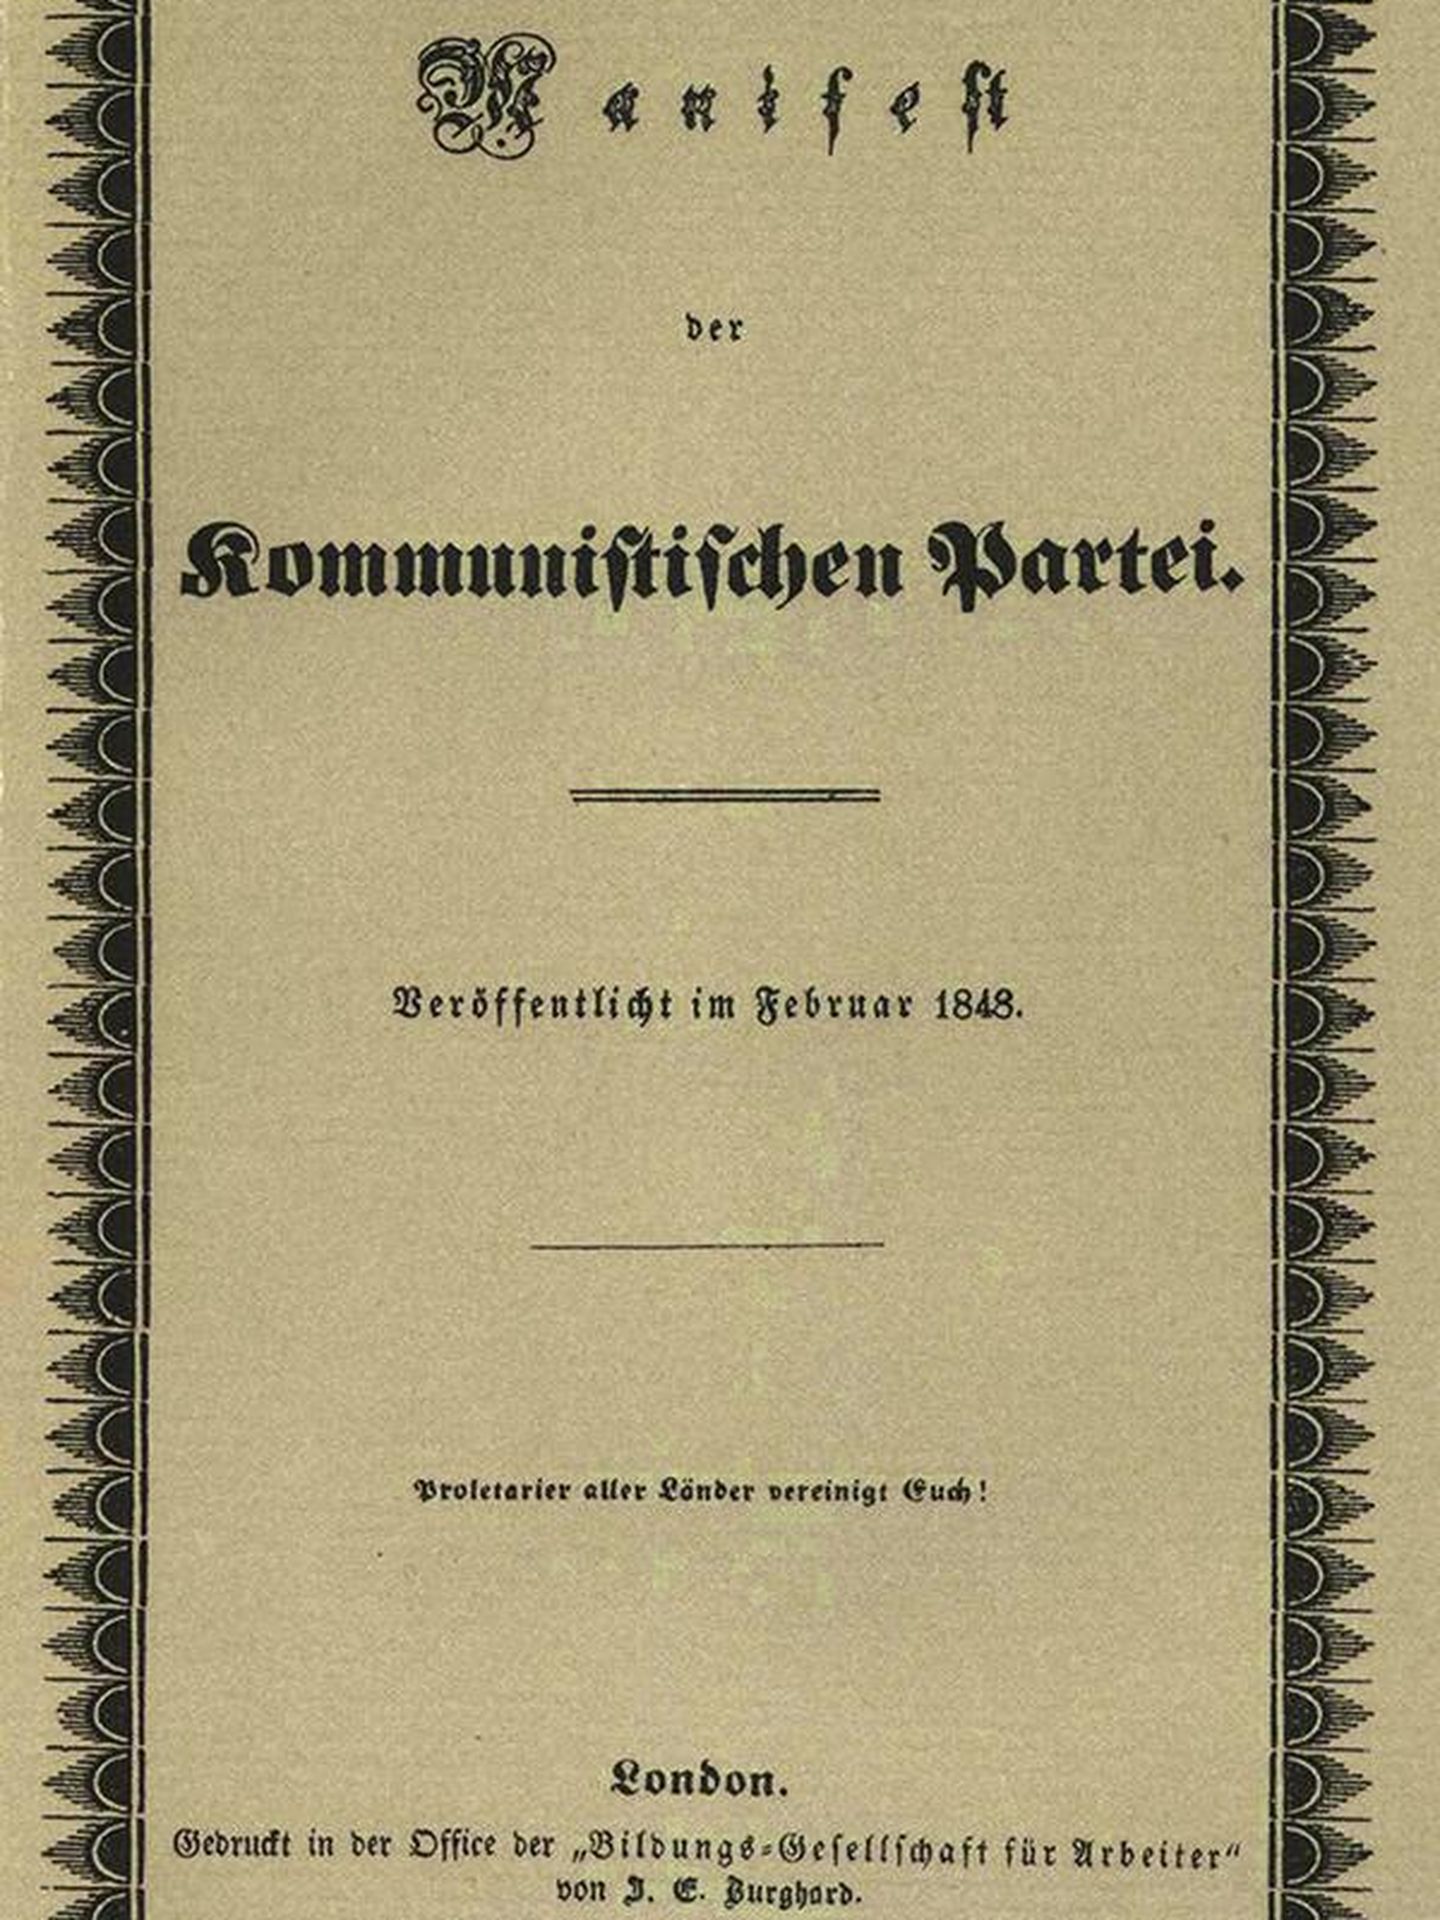 La portada original del 'Manifiesto Comunista'.